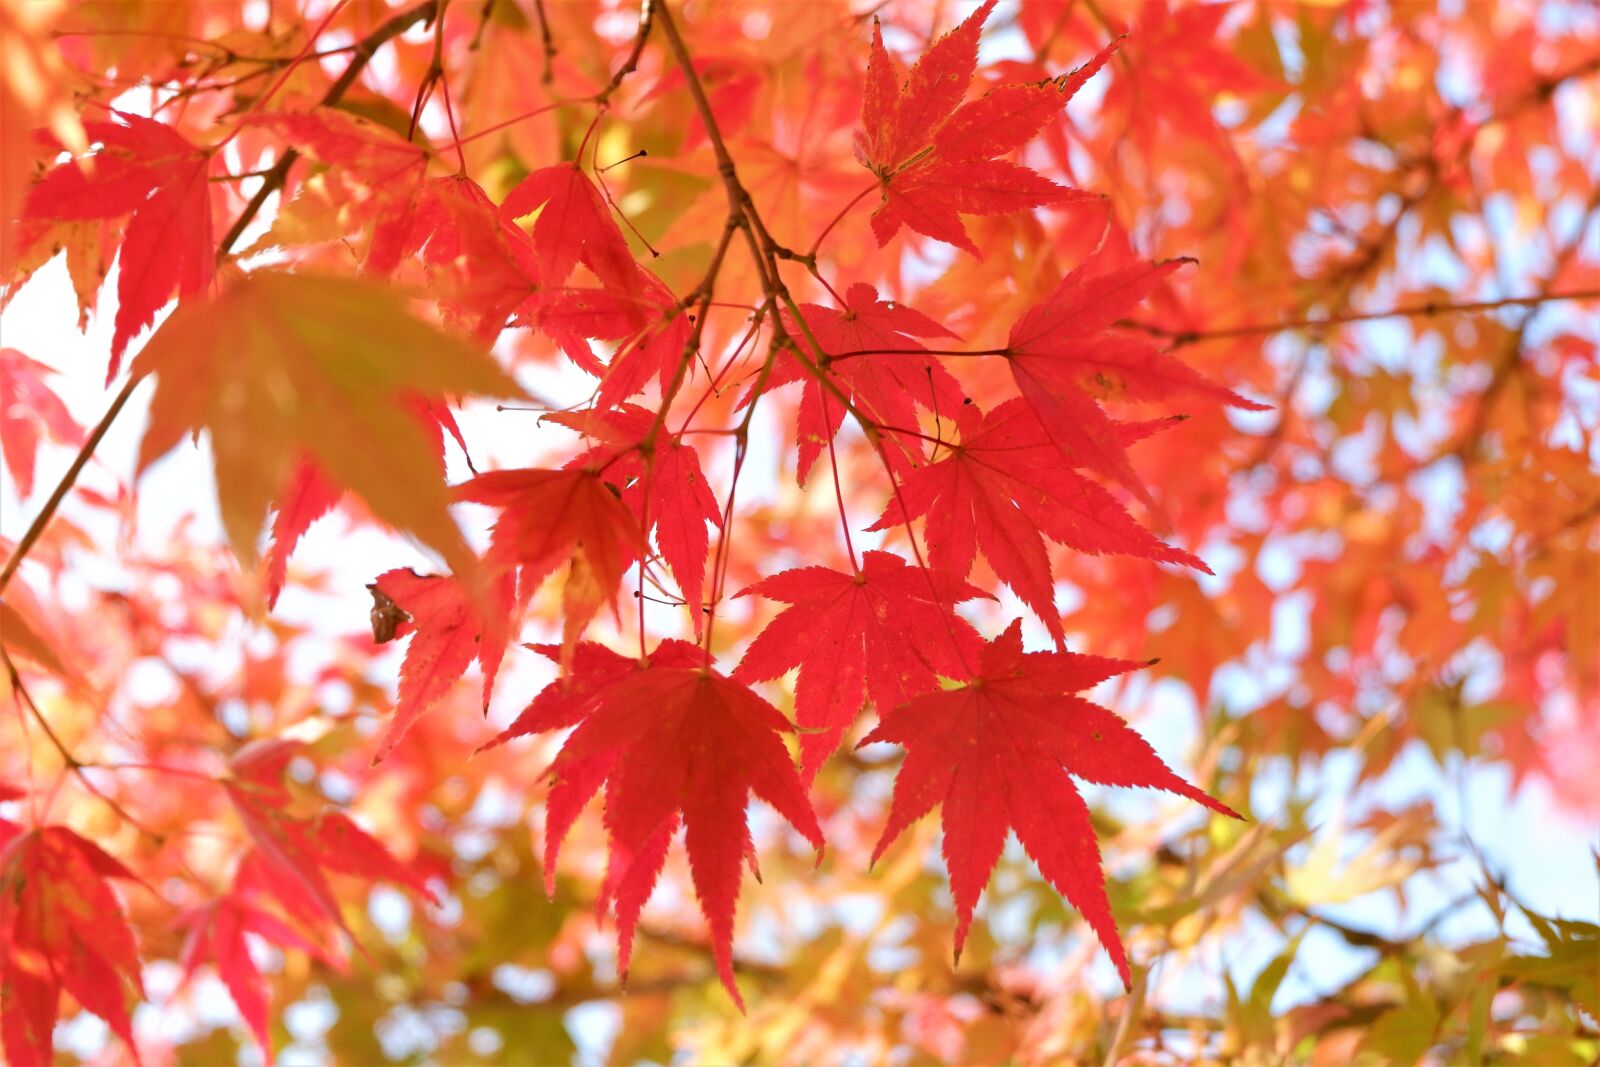 Fujifilm X-A3 sample photo. Fall, leaves, autumn photography